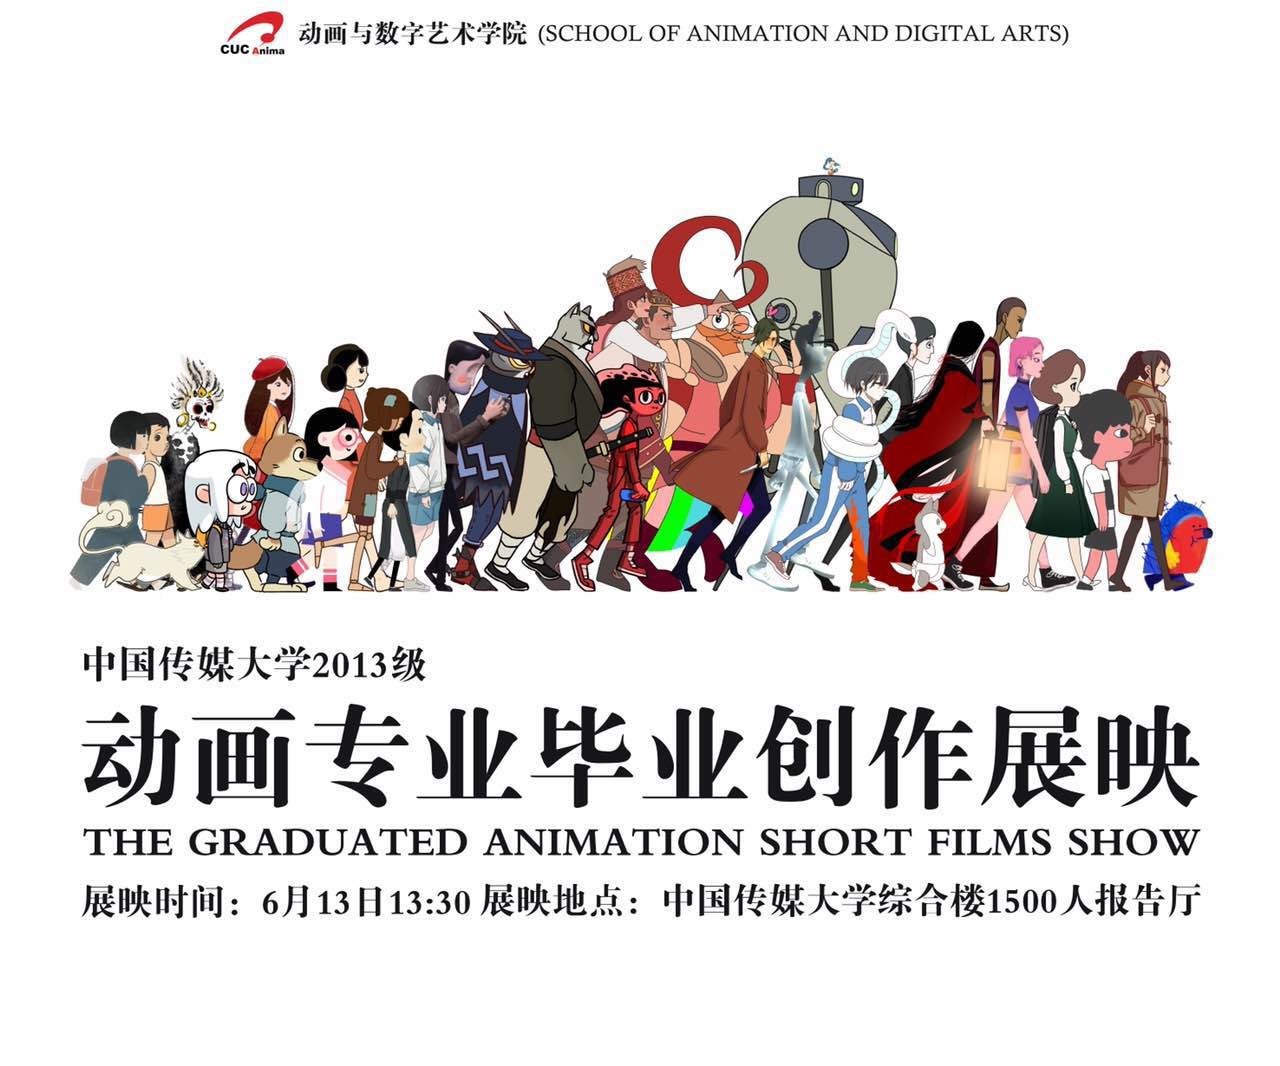 【毕业季】中国传媒大学动画专业毕设展来啦!